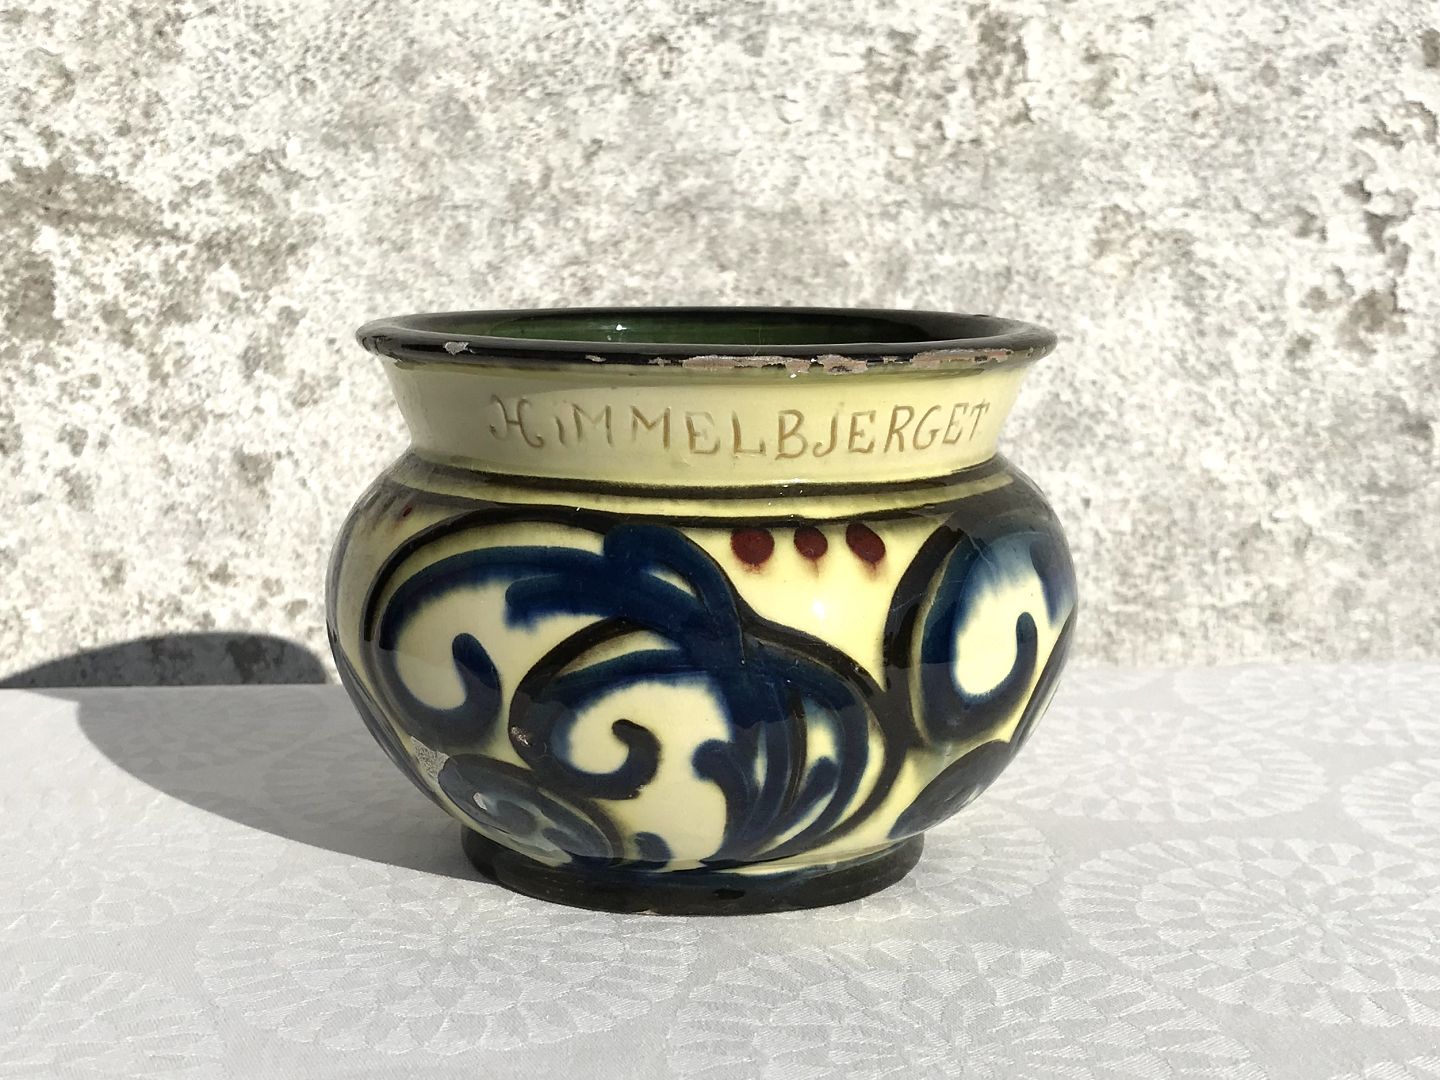 Moster Olga - Antik & Design - Dansk keramik * Kohornsbemalet * Vase fra Himmelbjerget * *300kr - Dansk keramik * Kohornsbemalet * fra Himmelbjerget * *300kr